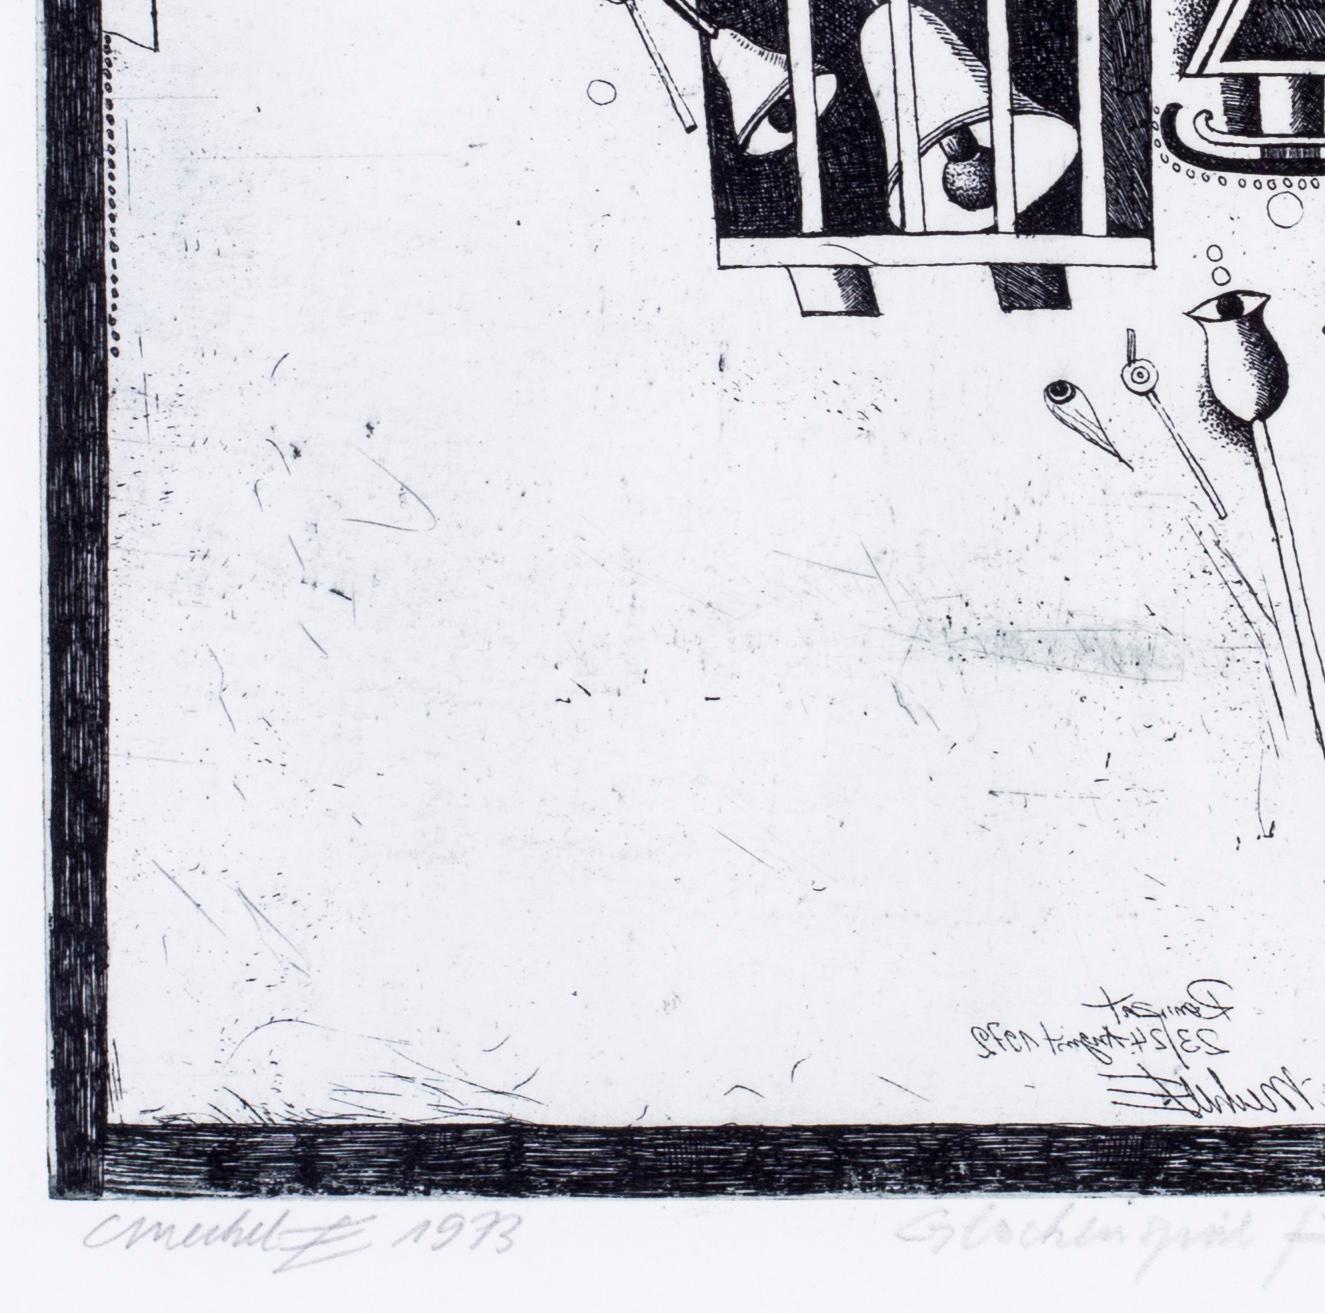 Gravures surréalistes en noir et blanc de l'artiste allemand Christoph Muhil des années 1970 - Surréalisme Print par Unknown